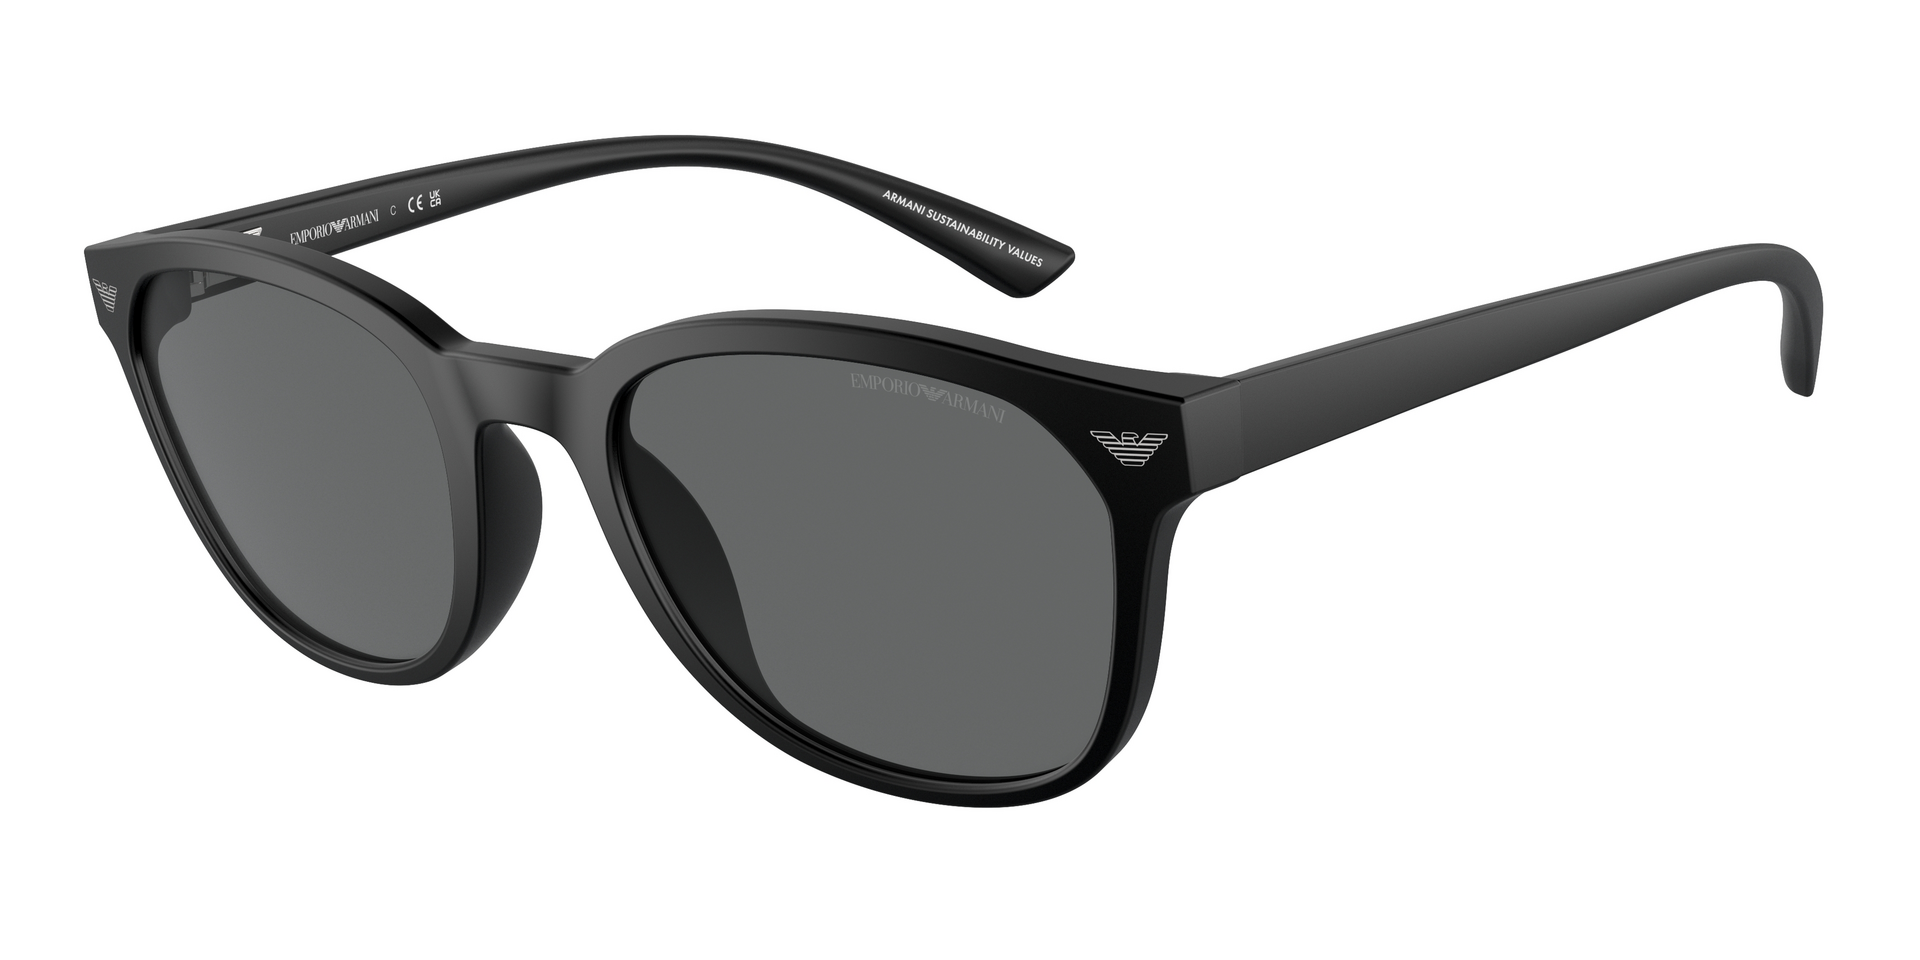 Das Bild zeigt die Sonnenbrille EA4225U 500187 von der Marke Emporio Armani in schwarz.